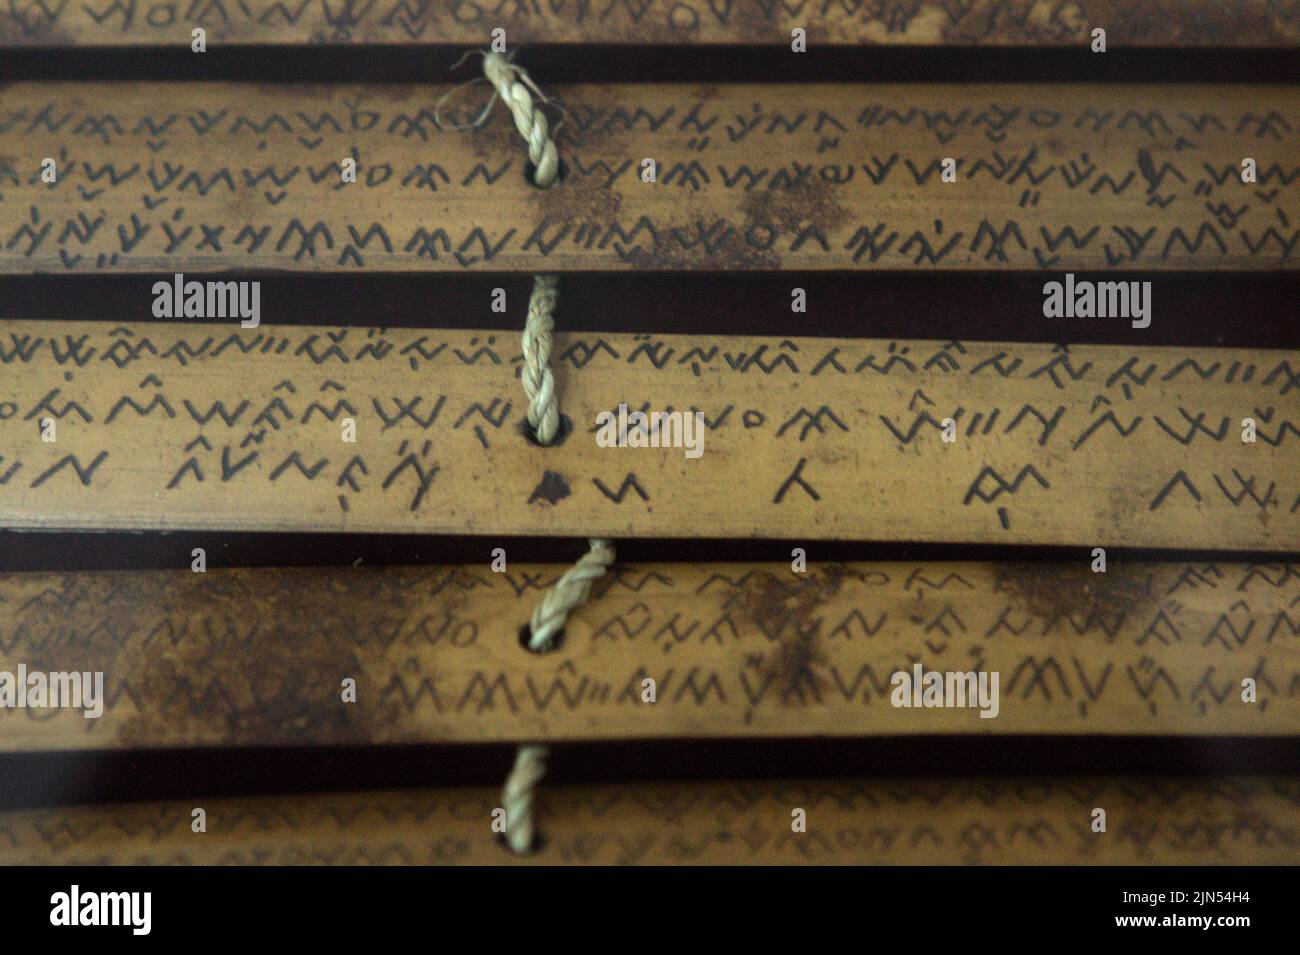 Antichi scritti scritti su bambù, originati da Lampung (Sumatra), vengono fotografati presso la Biblioteca Nazionale di Giacarta, Indonesia. Foto Stock